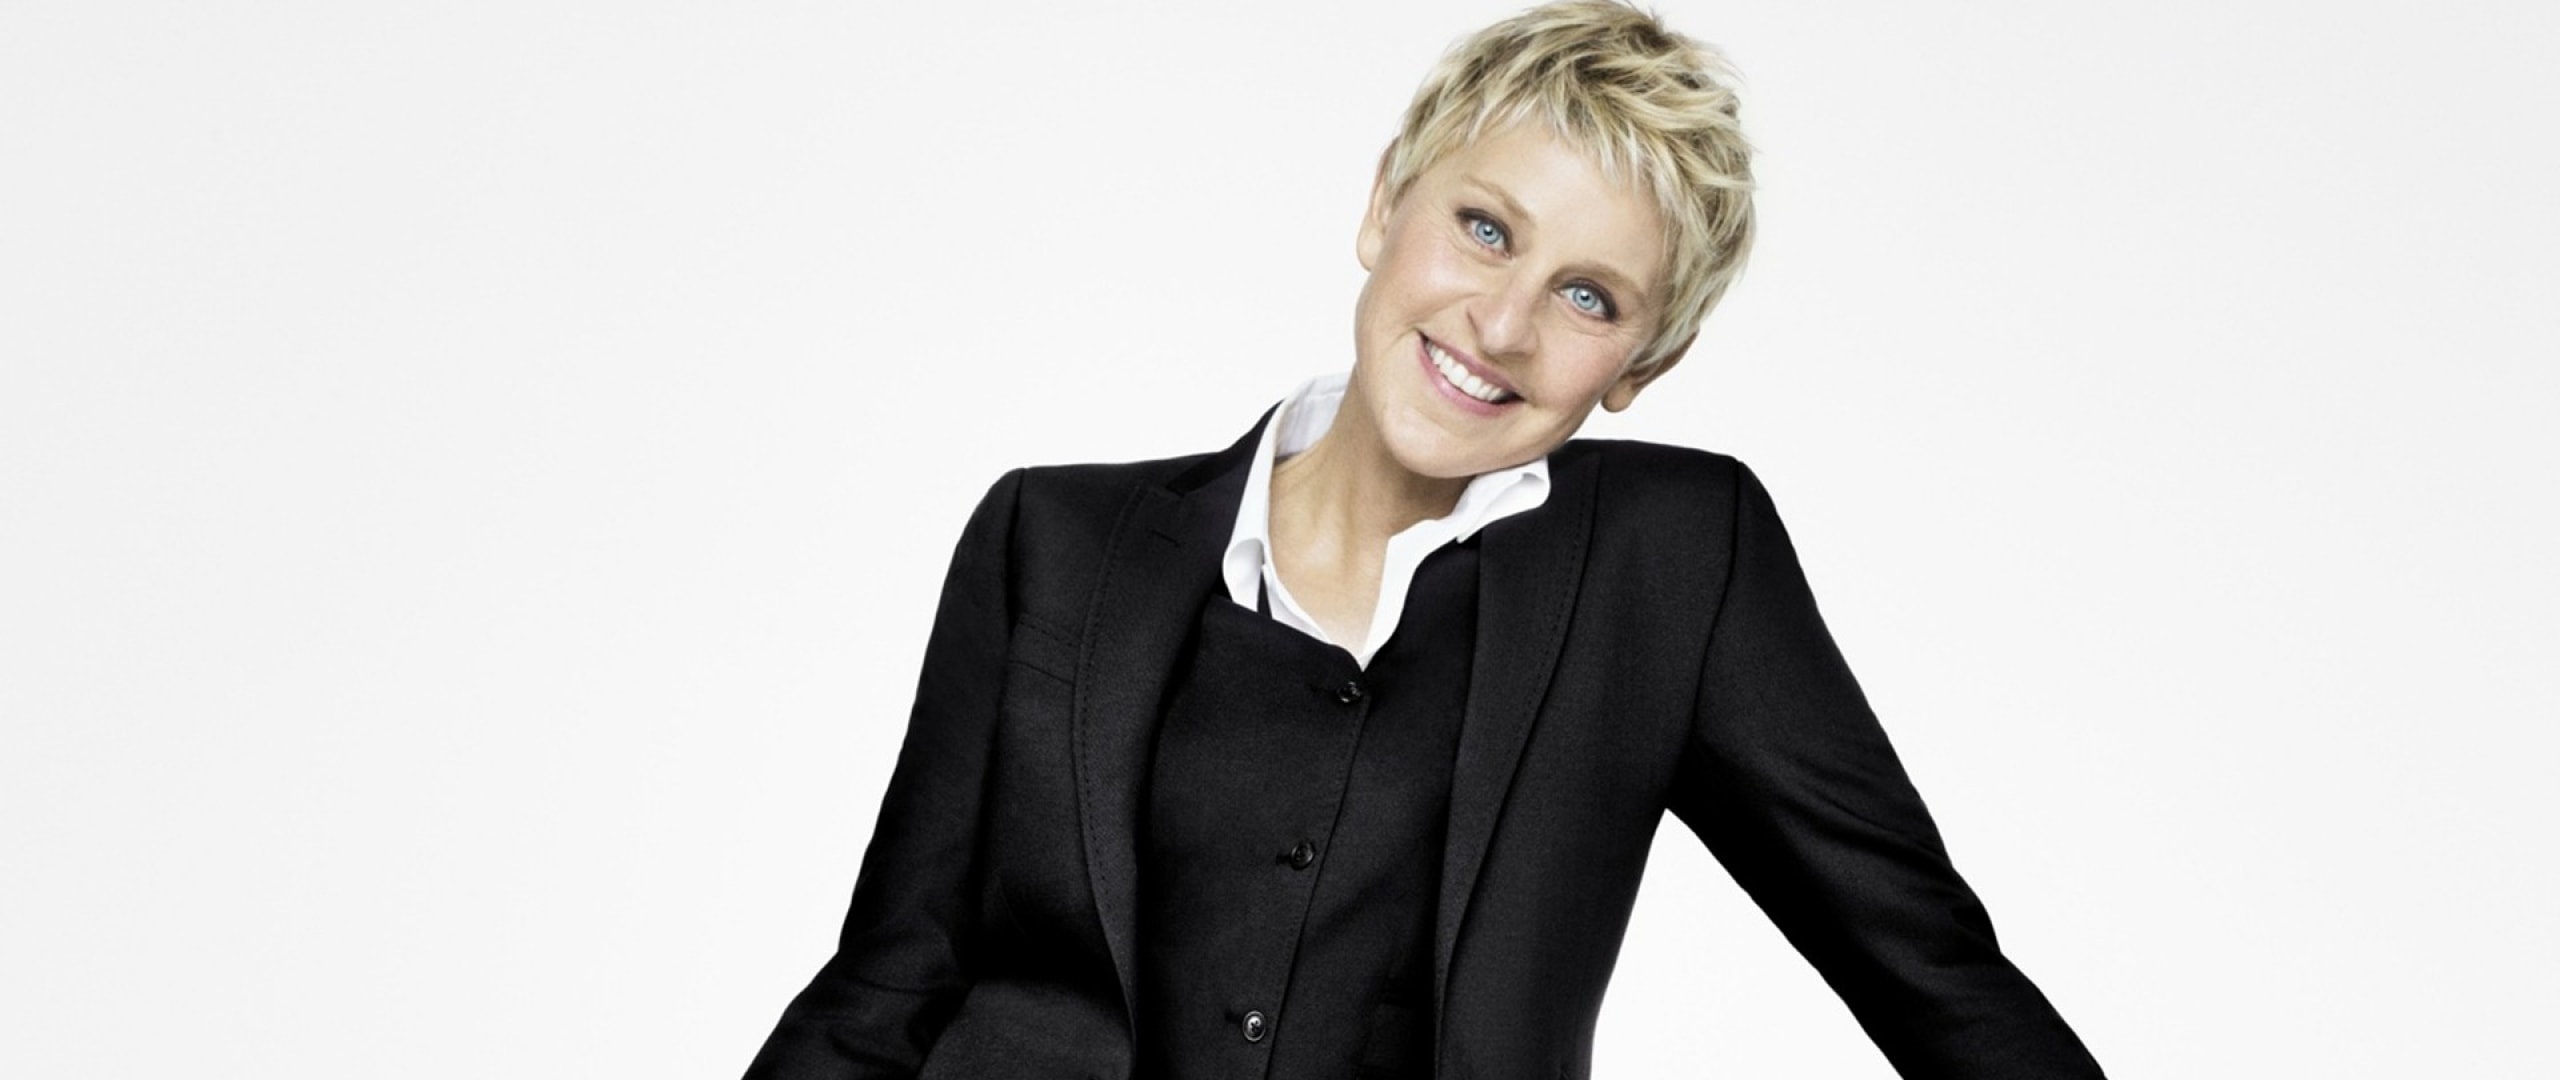 Ellen DeGeneres, Portia de Rossi, Celebs' relationship, Life story, 2560x1080 Dual Screen Desktop